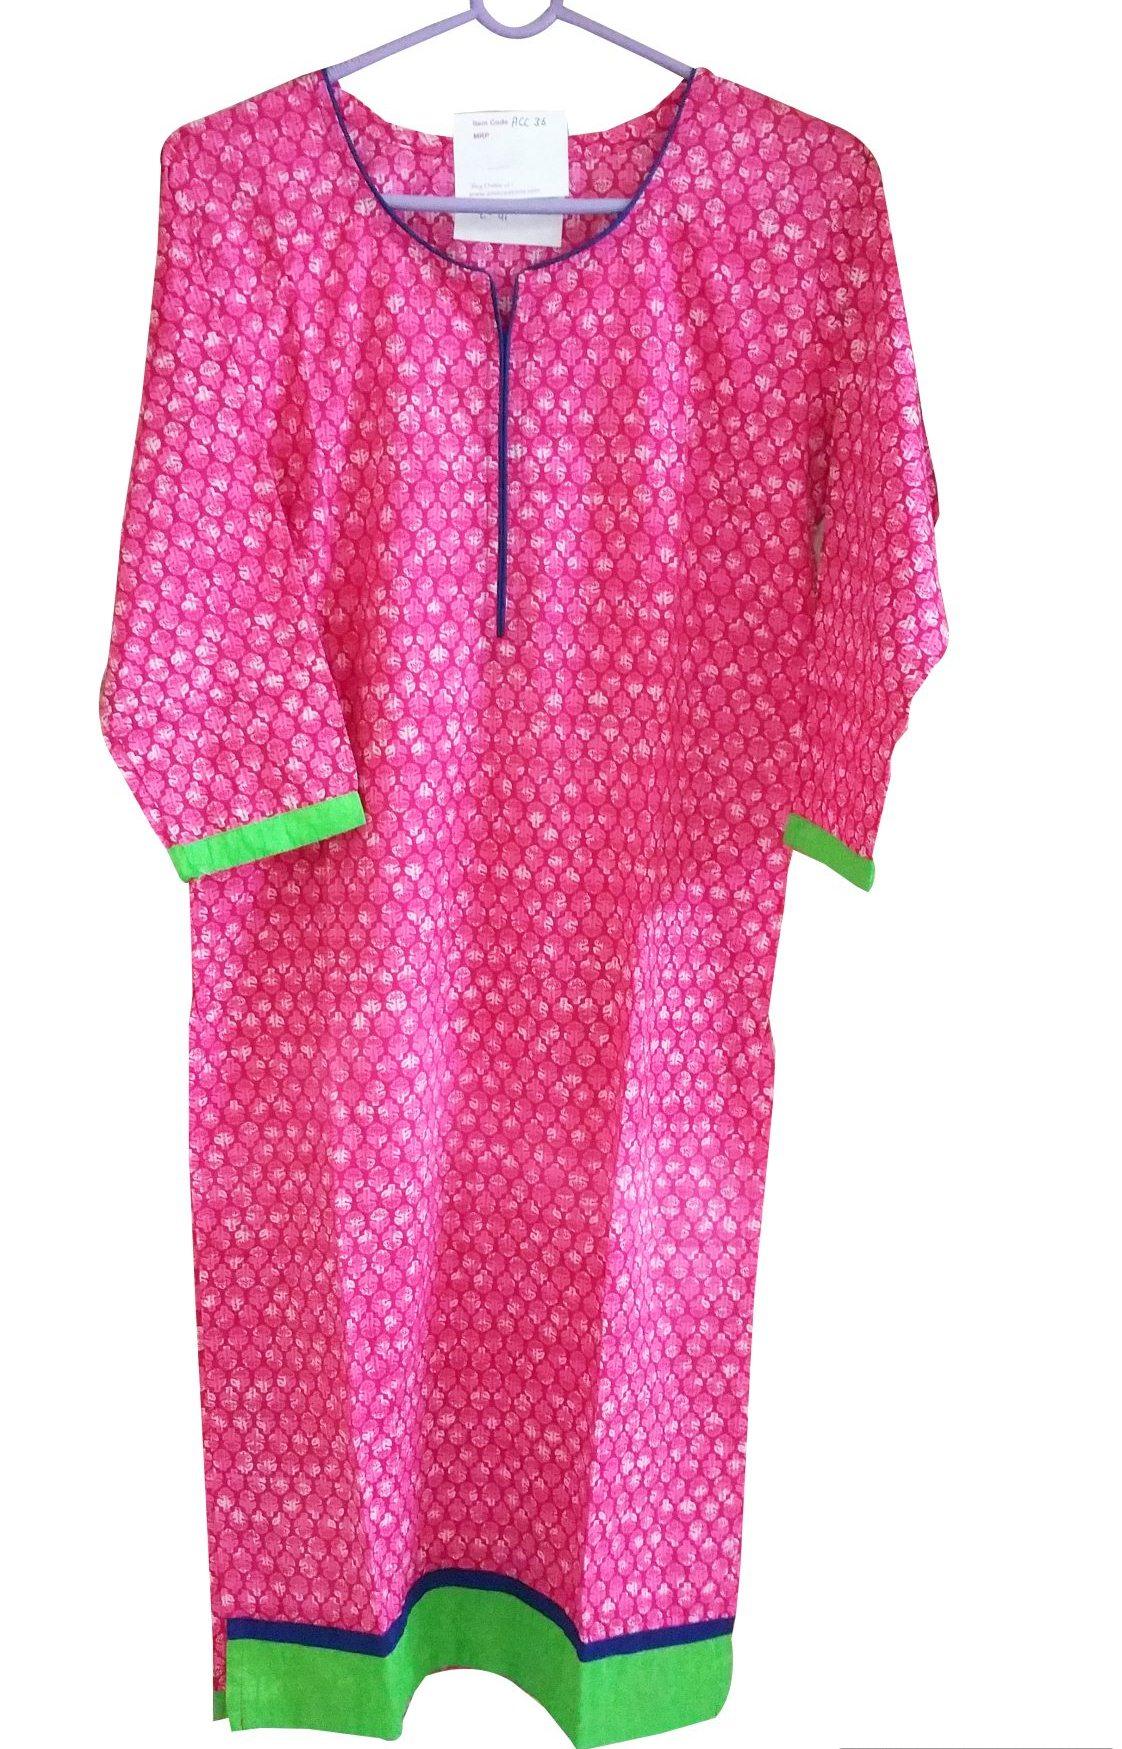 Pink Cotton Long Stitched Kurta With Jacket Dress Size 38 ACC36-Anvi Creations-Kurta,Kurti,Top,Tunic